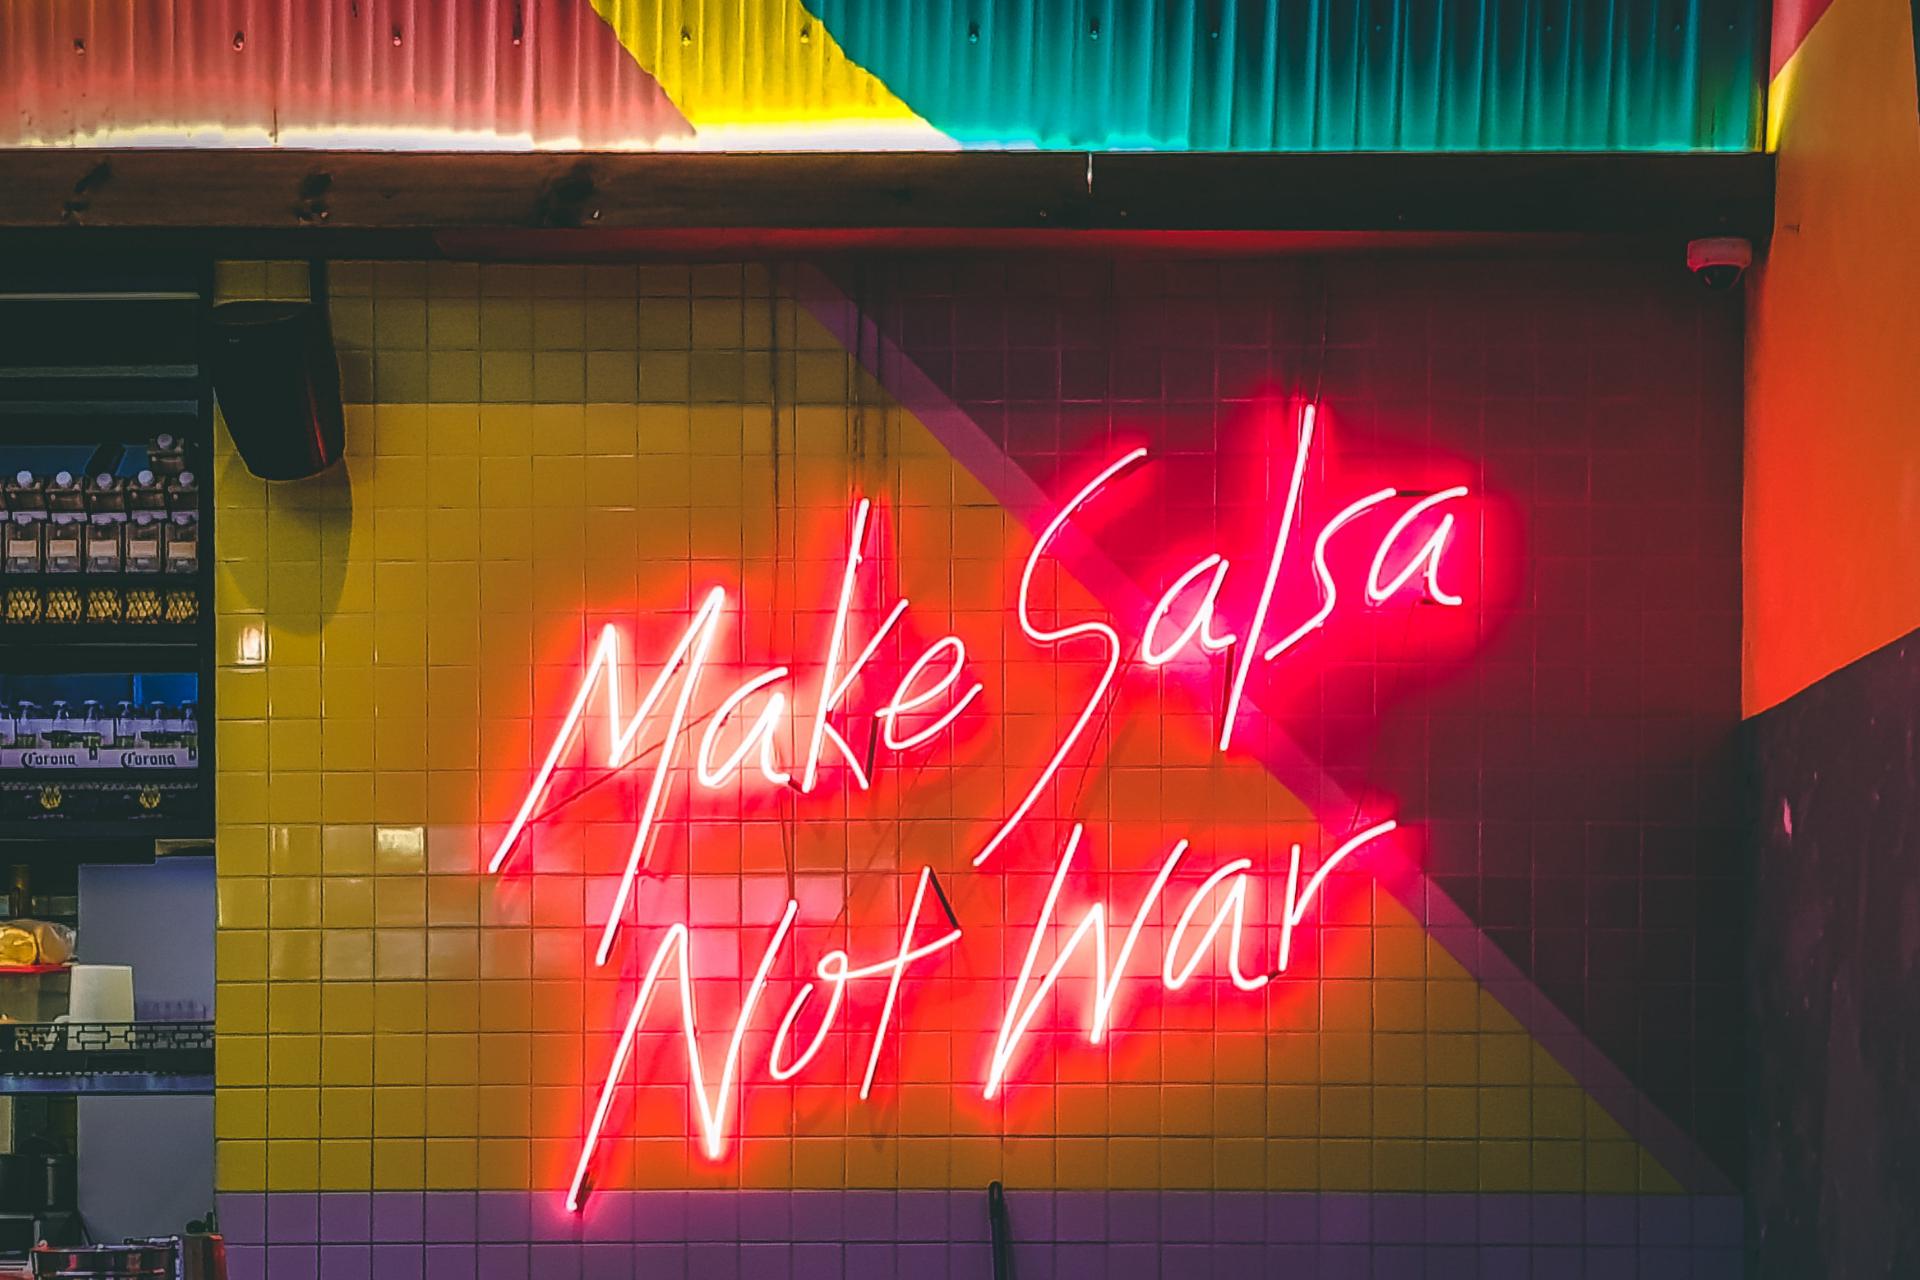 Palabras en una pared que dicen Haz salsa, no la guerra y valores de restaurante